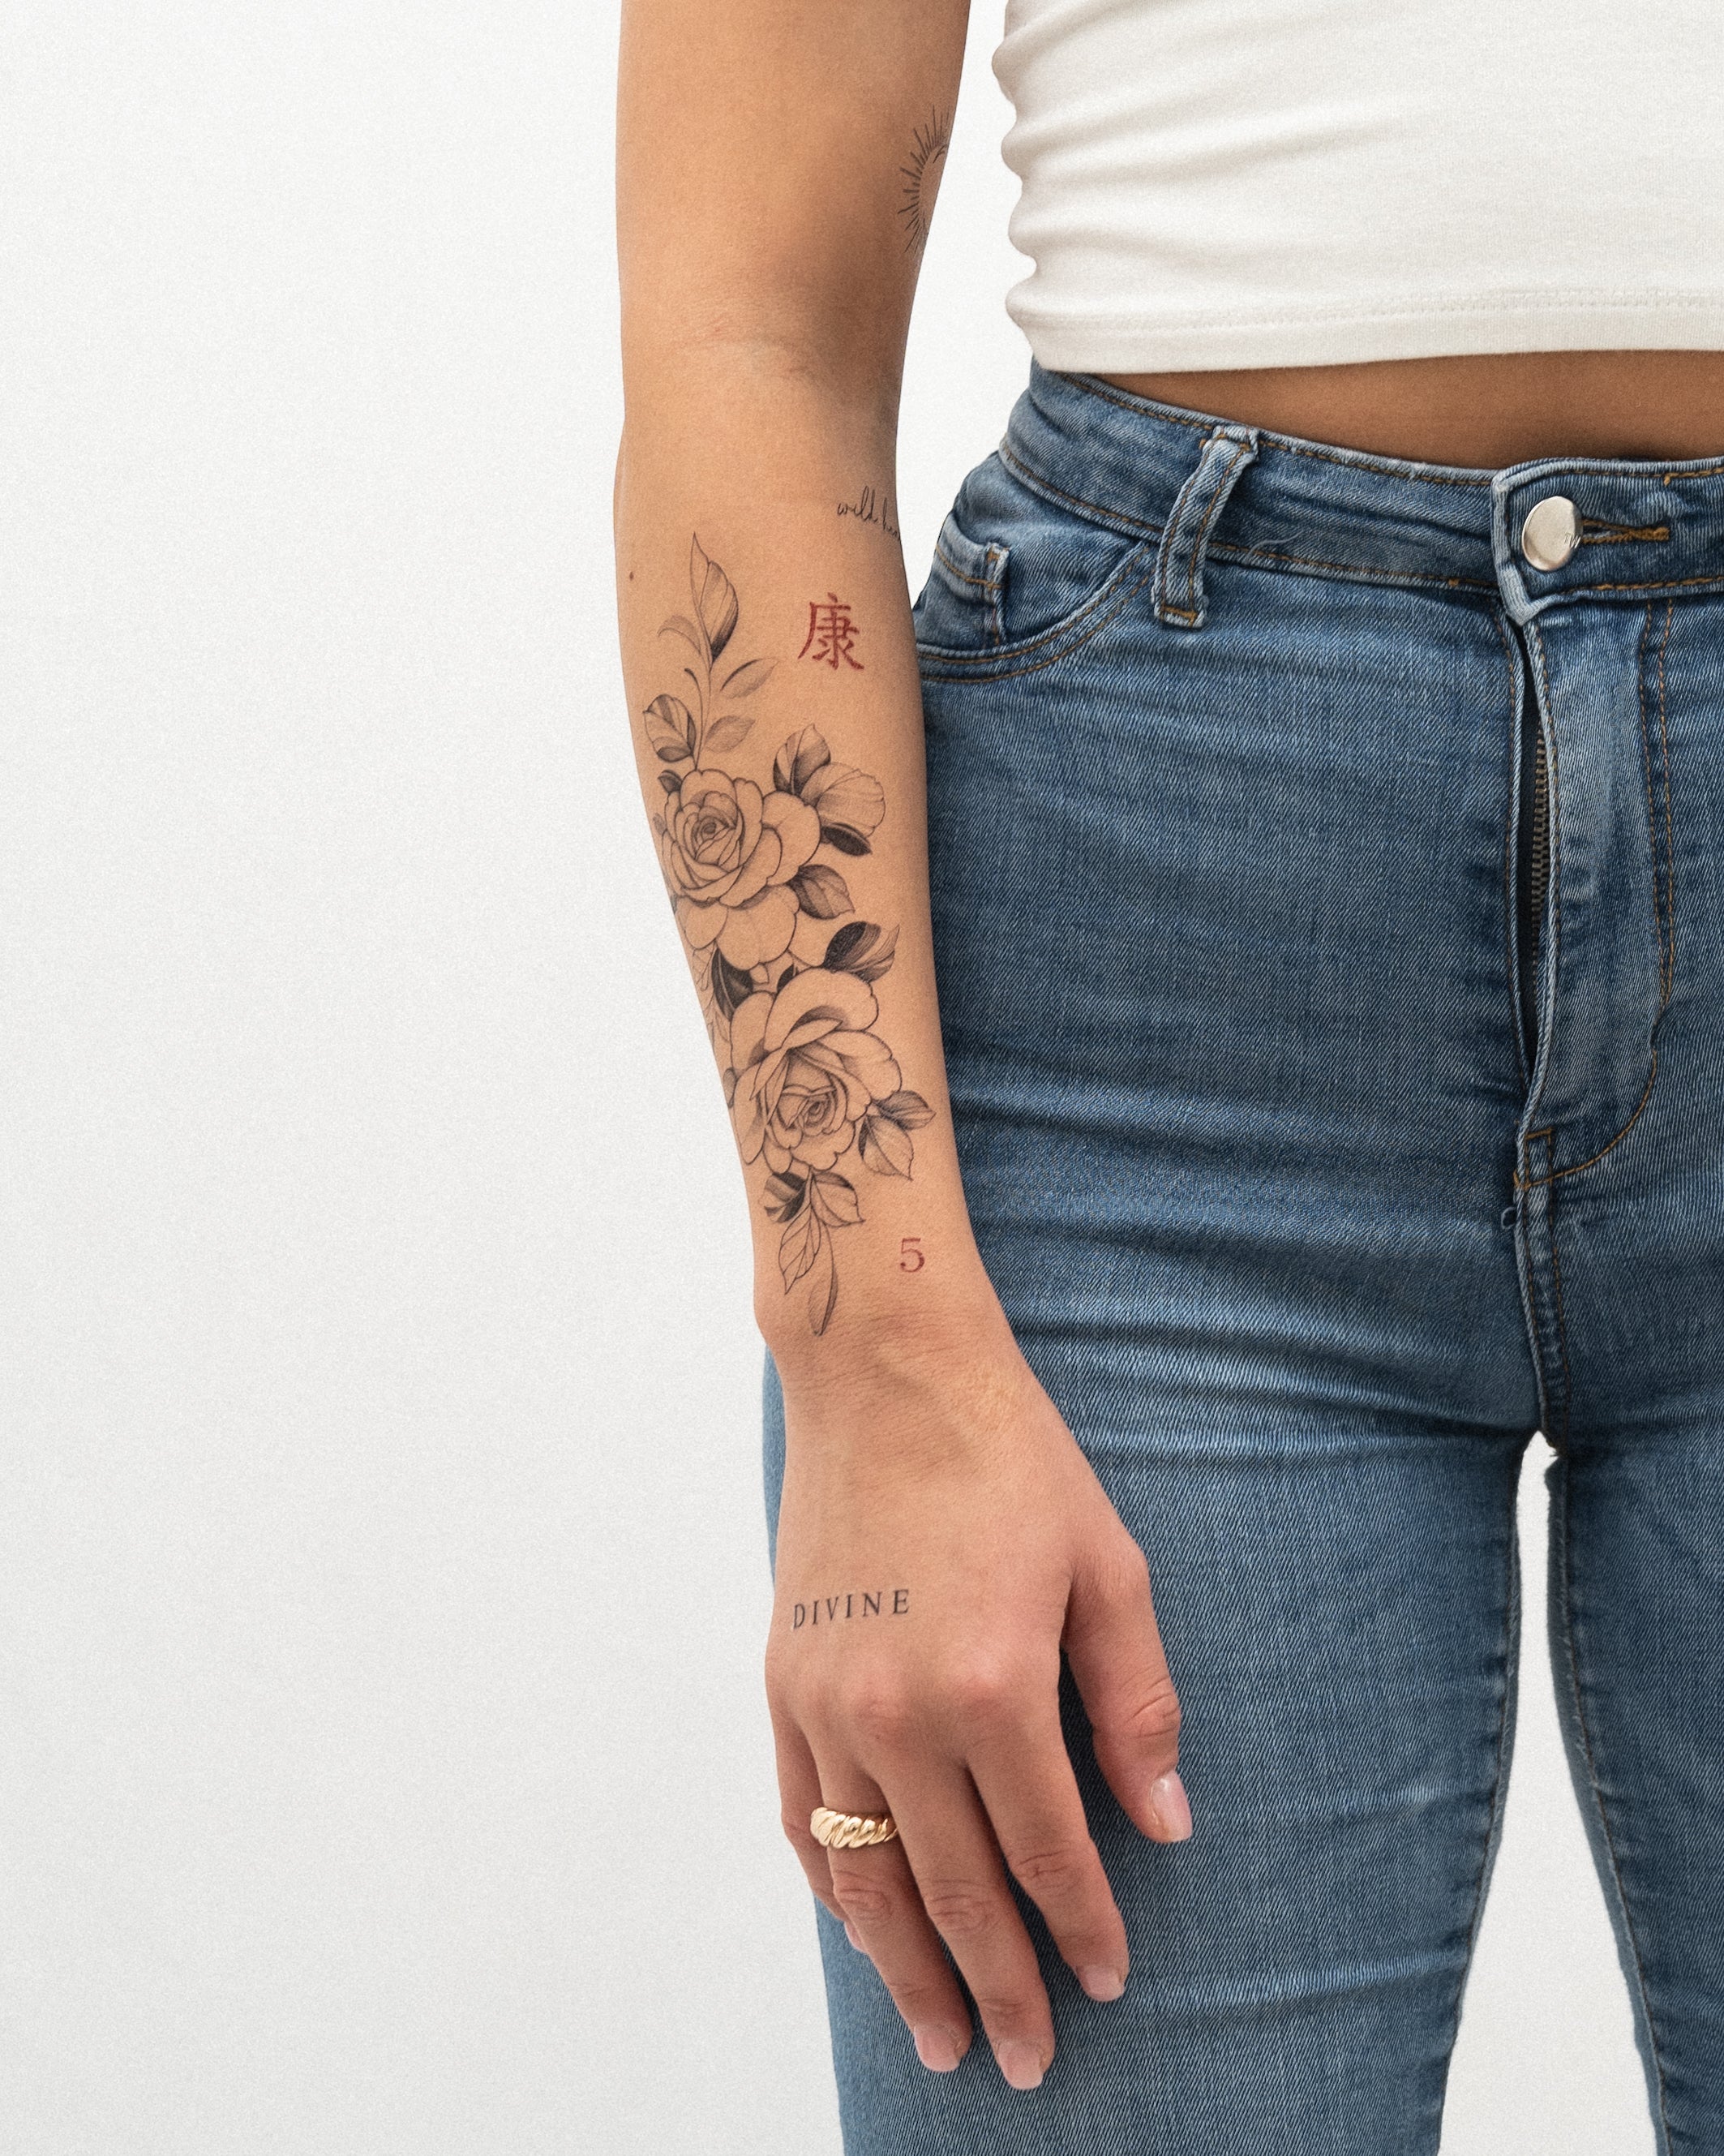 Roses Set | Tattoo Sticker